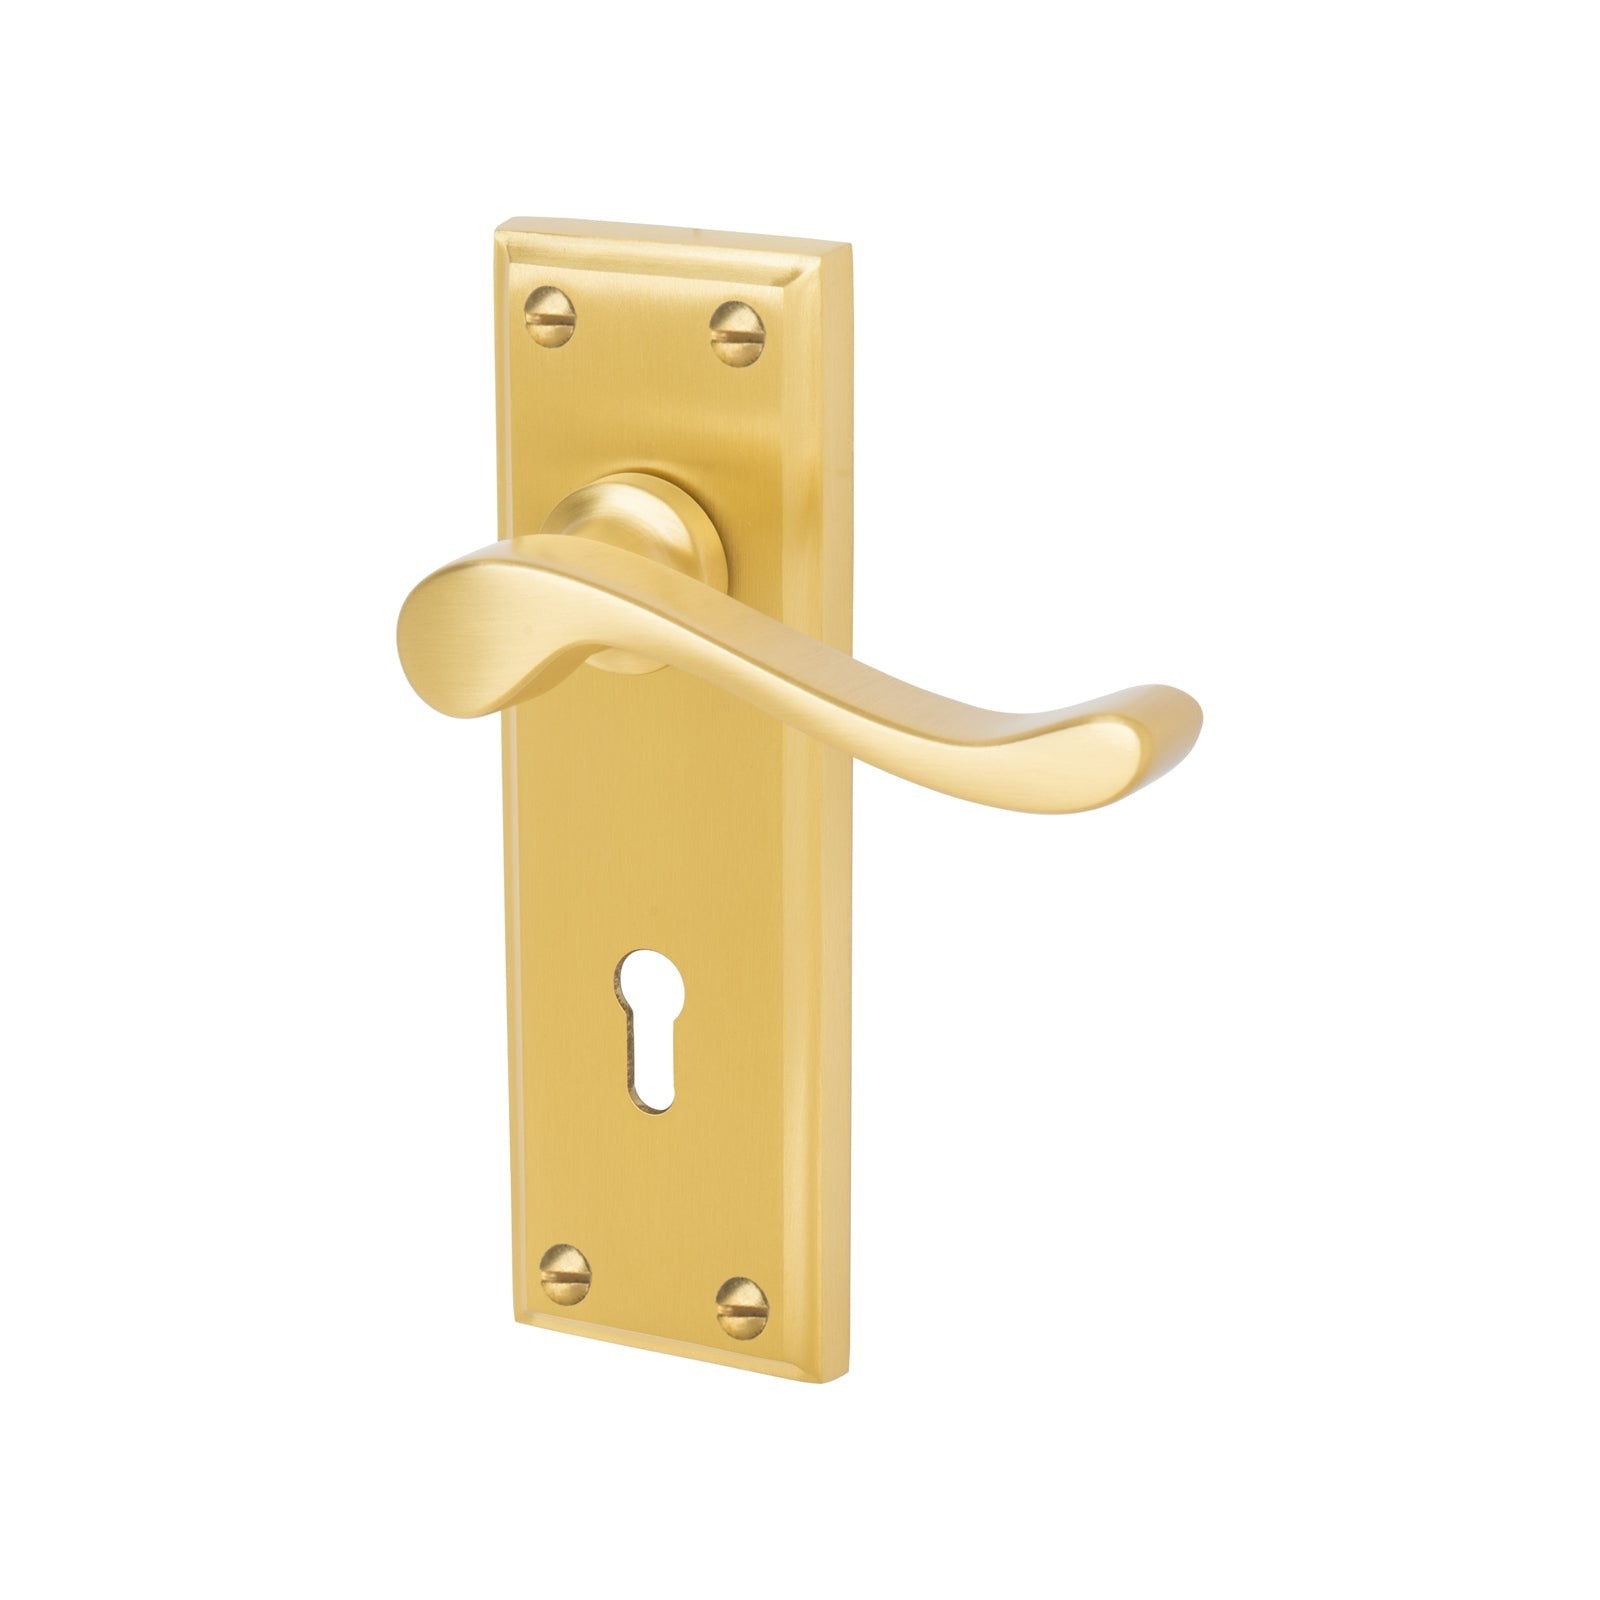 Edwardian Door Handles On Plate Lock Handle in Satin Brass 